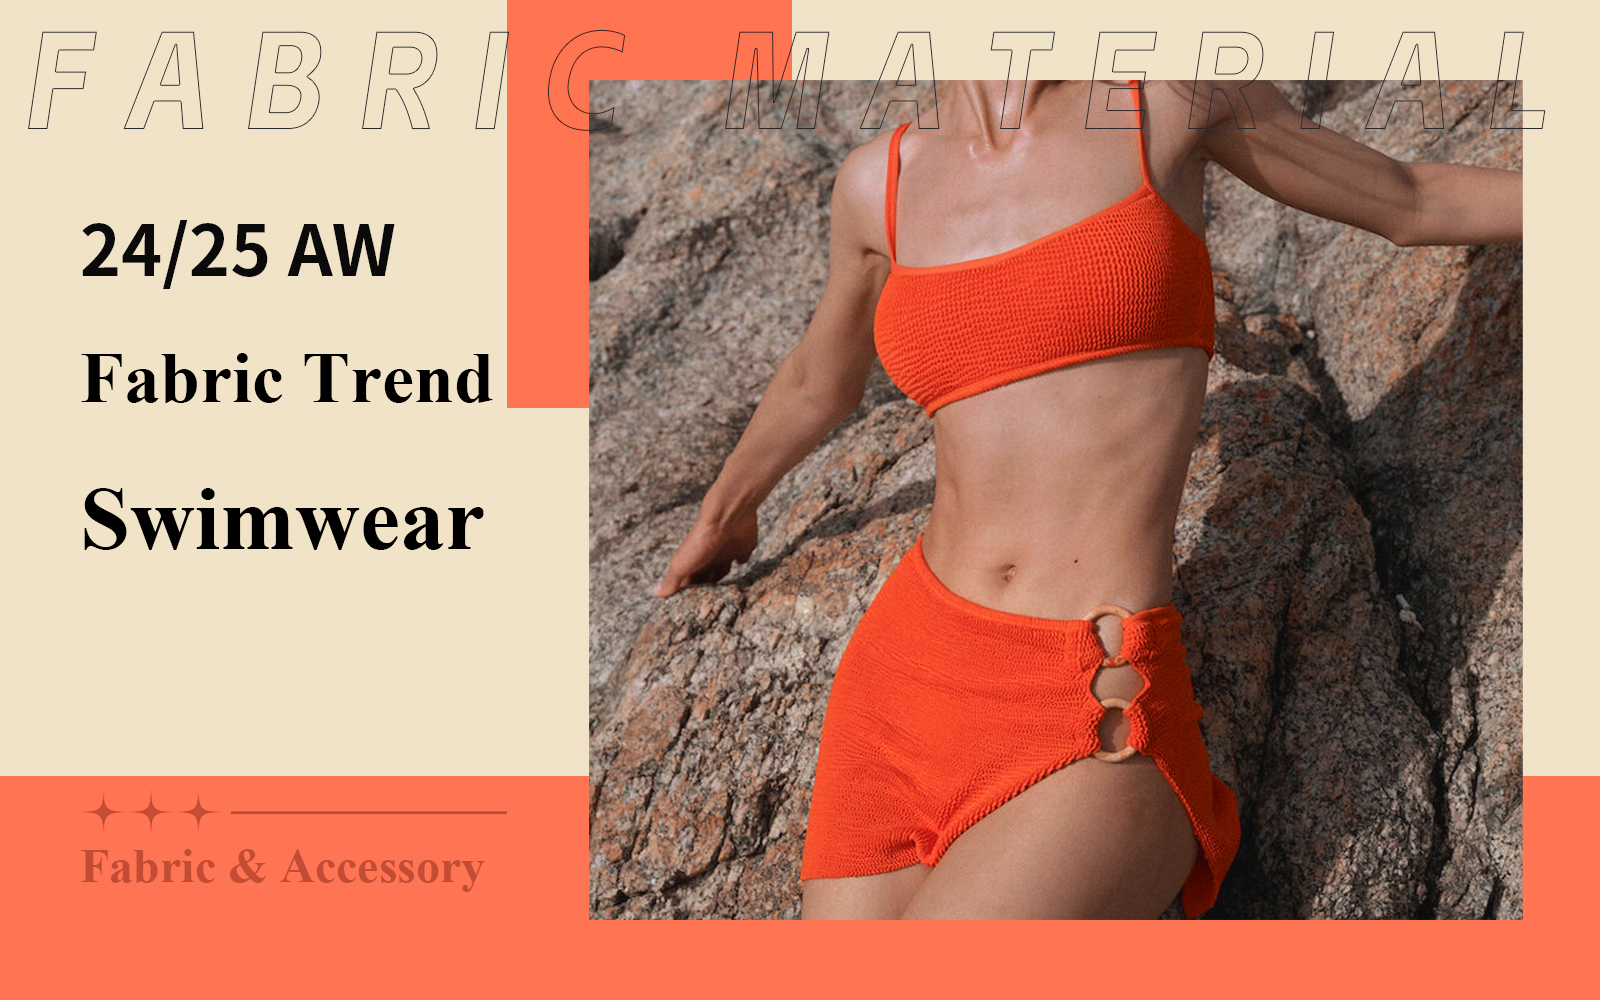 A/W 24/25 Fabric Trend for Women's Swimwear